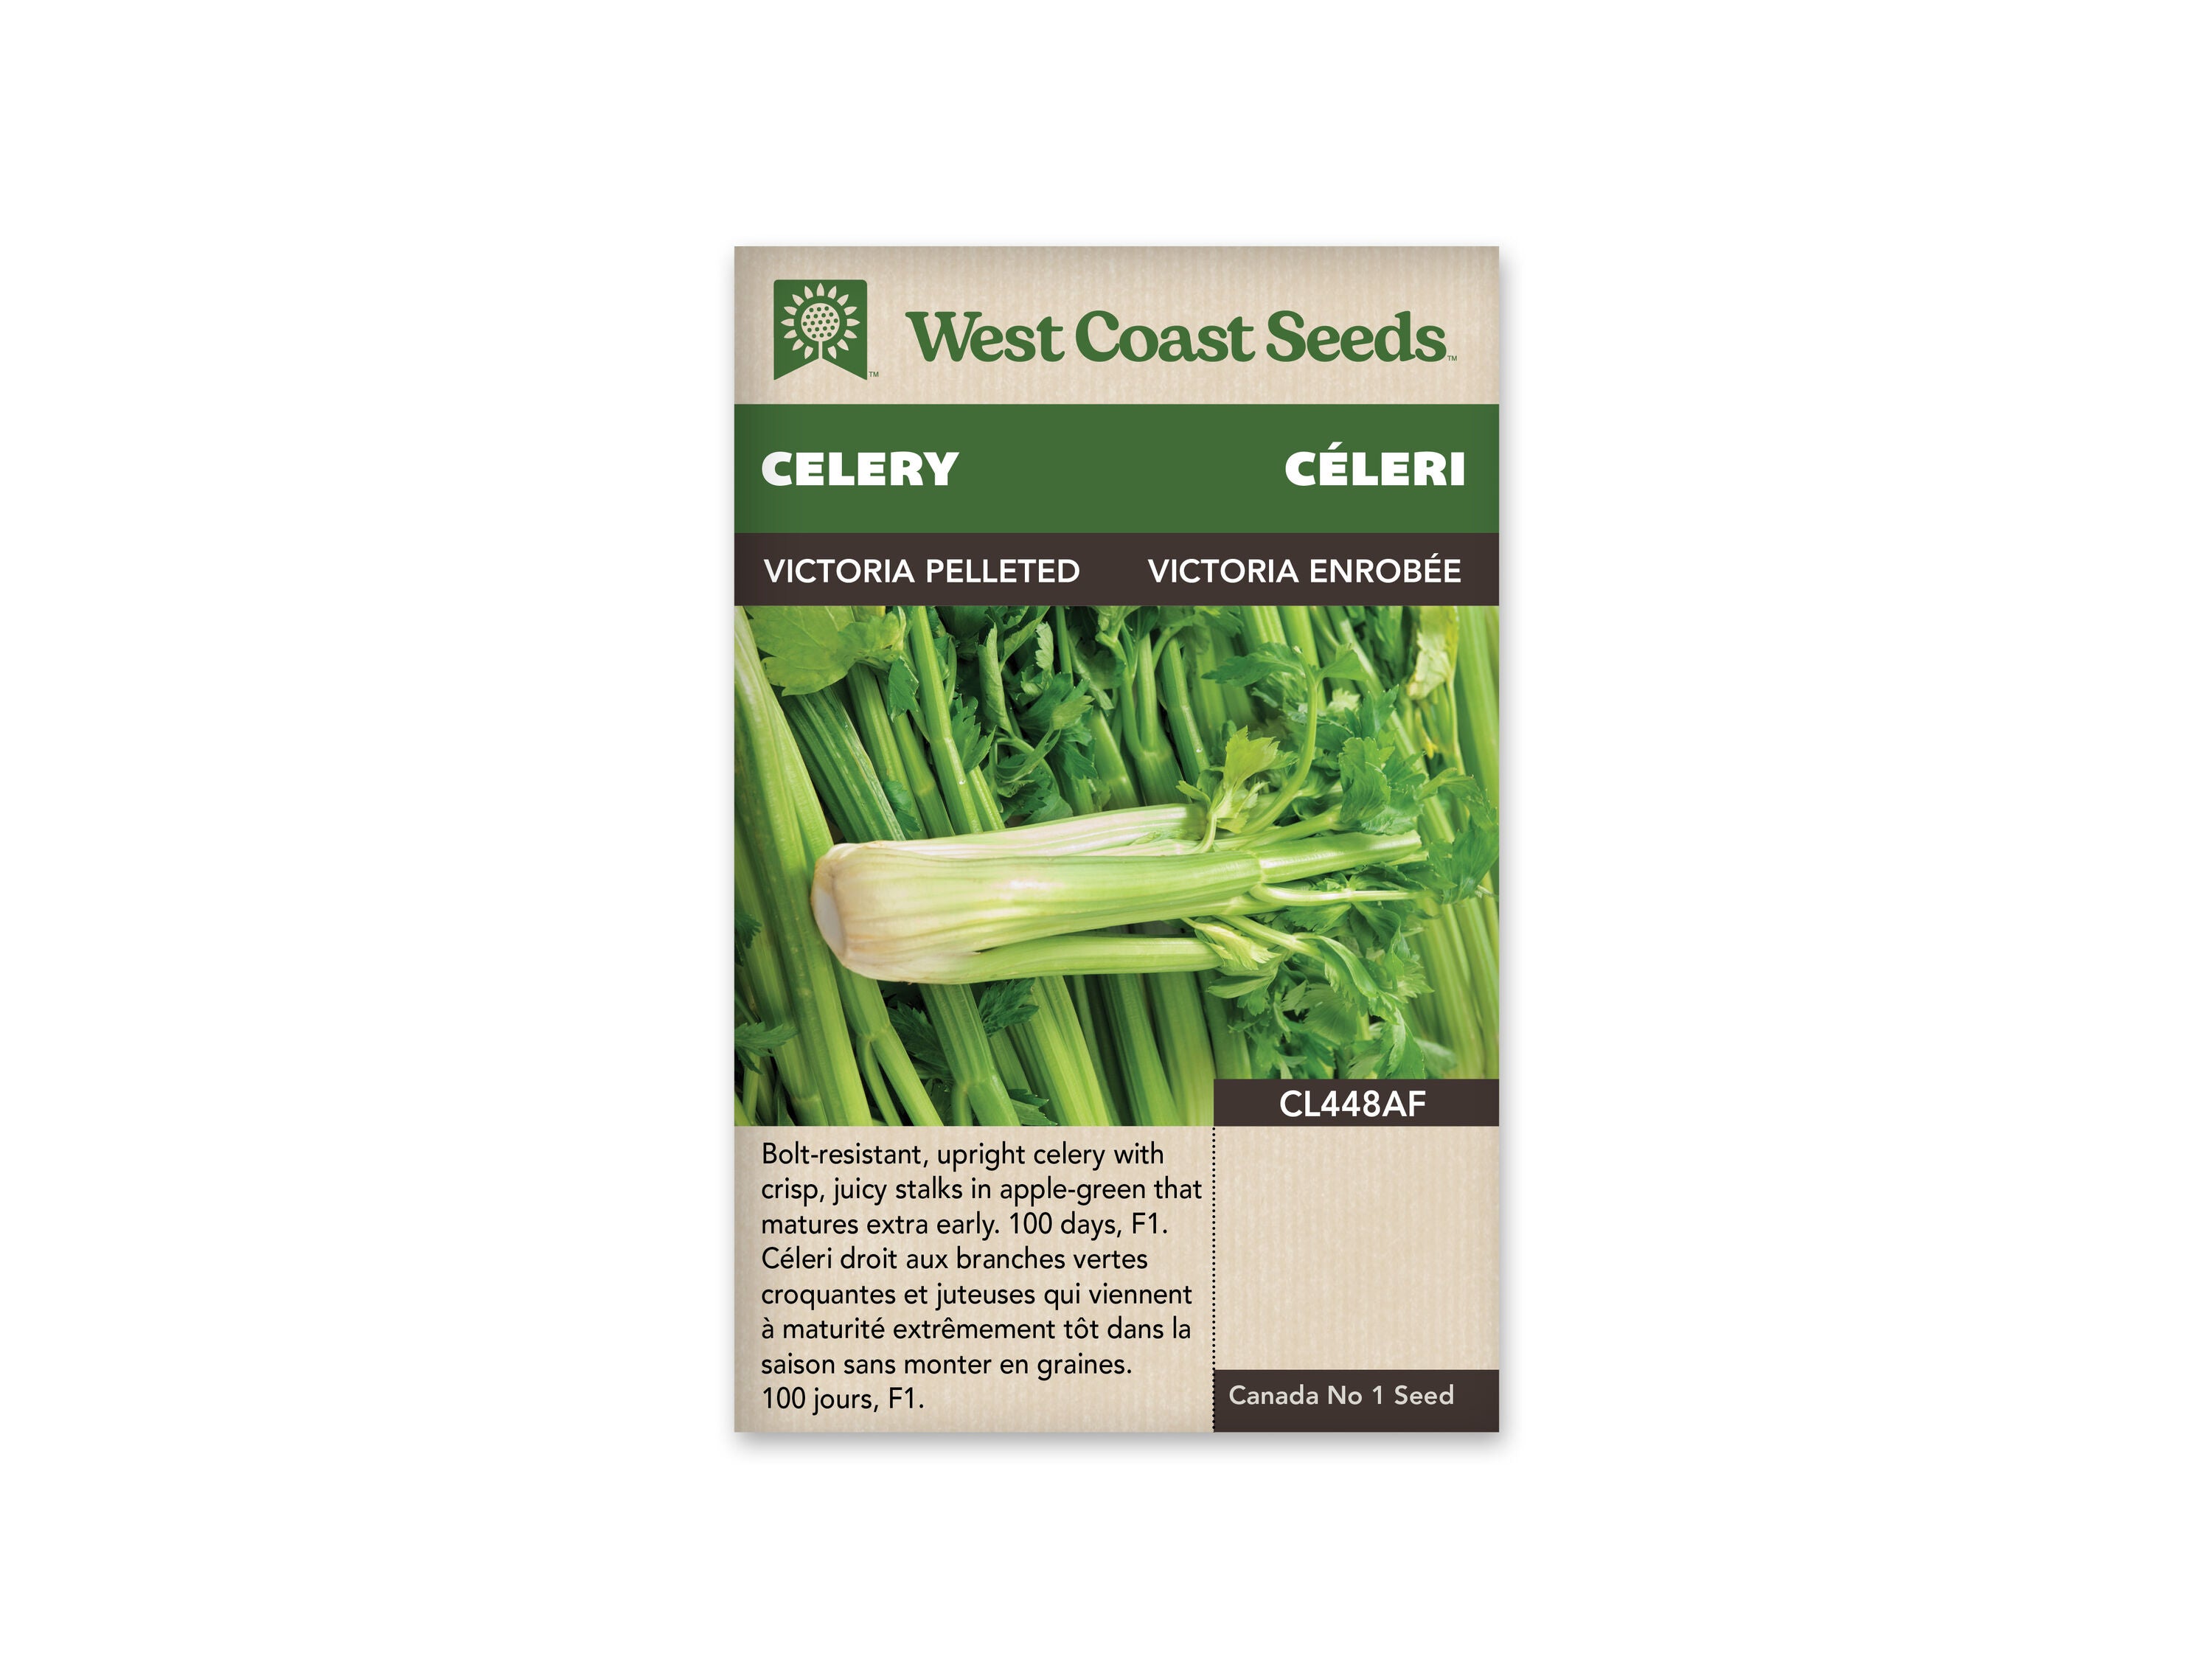 Victoria F1 (Pelleted) Celery Seeds